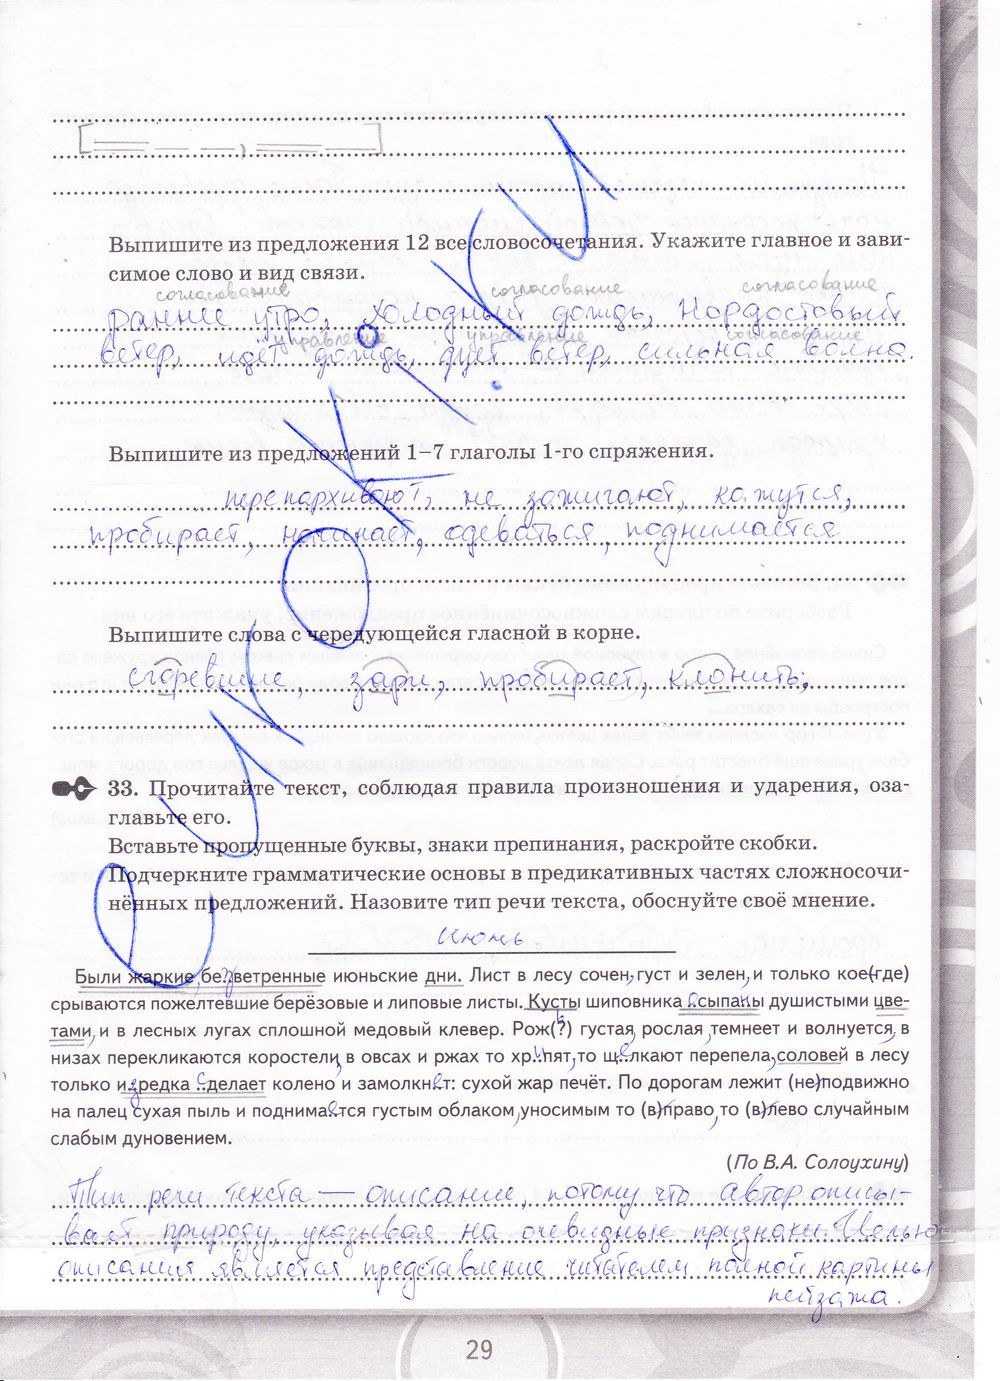 ГДЗ Русский язык 9 класс - стр. 29